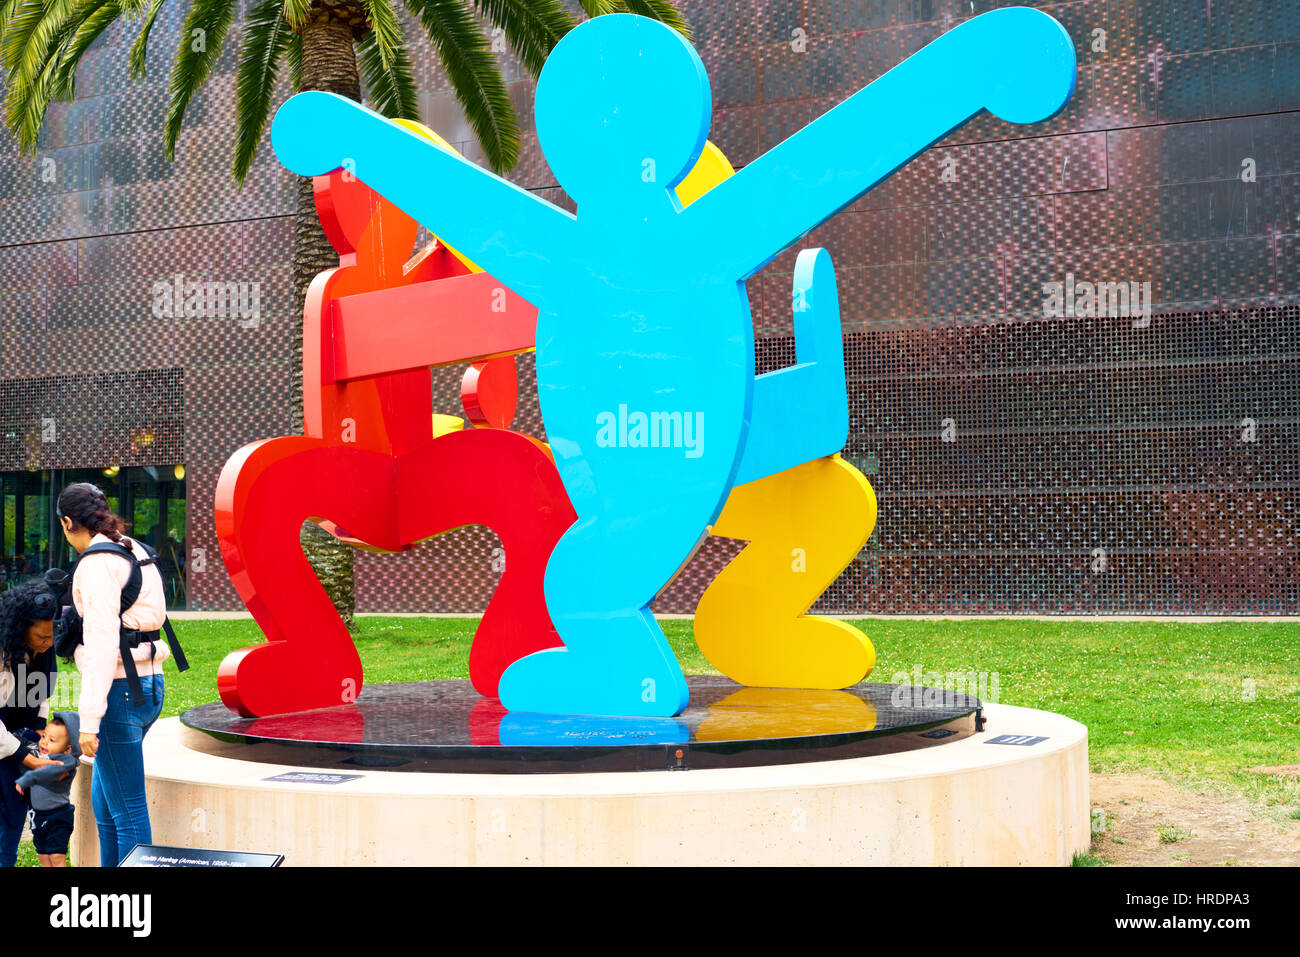 de Young Museum der schönen Künste - Keith Haring Skulptur auf dem Display  von Fronteinstieg (drei tanzende Figuren von Keith Haring), San Francisco,  Kalifornien, USA Stockfotografie - Alamy